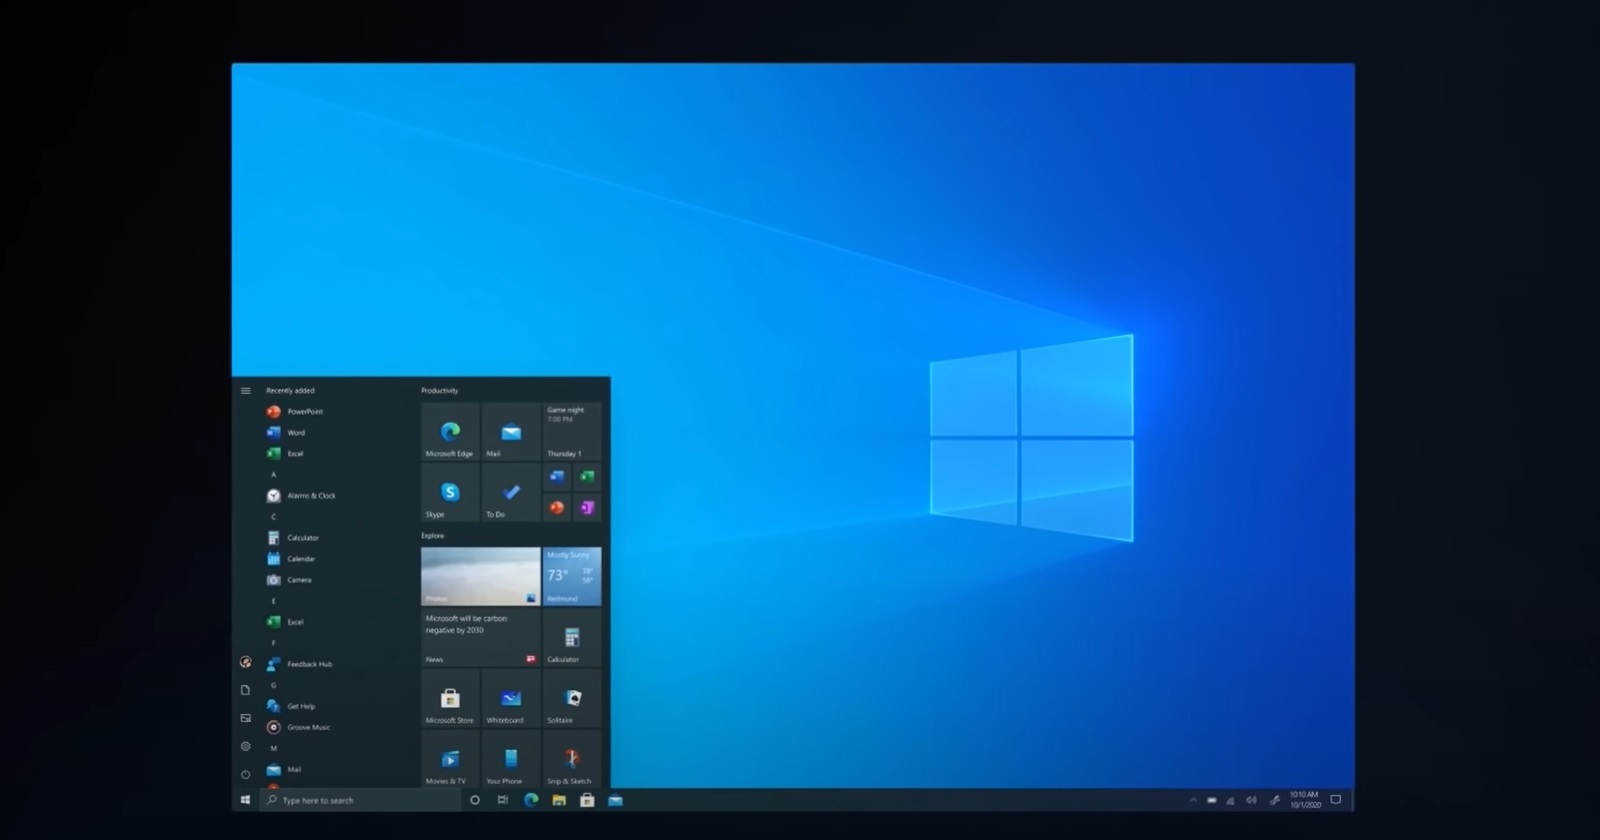  Windows 10  11  